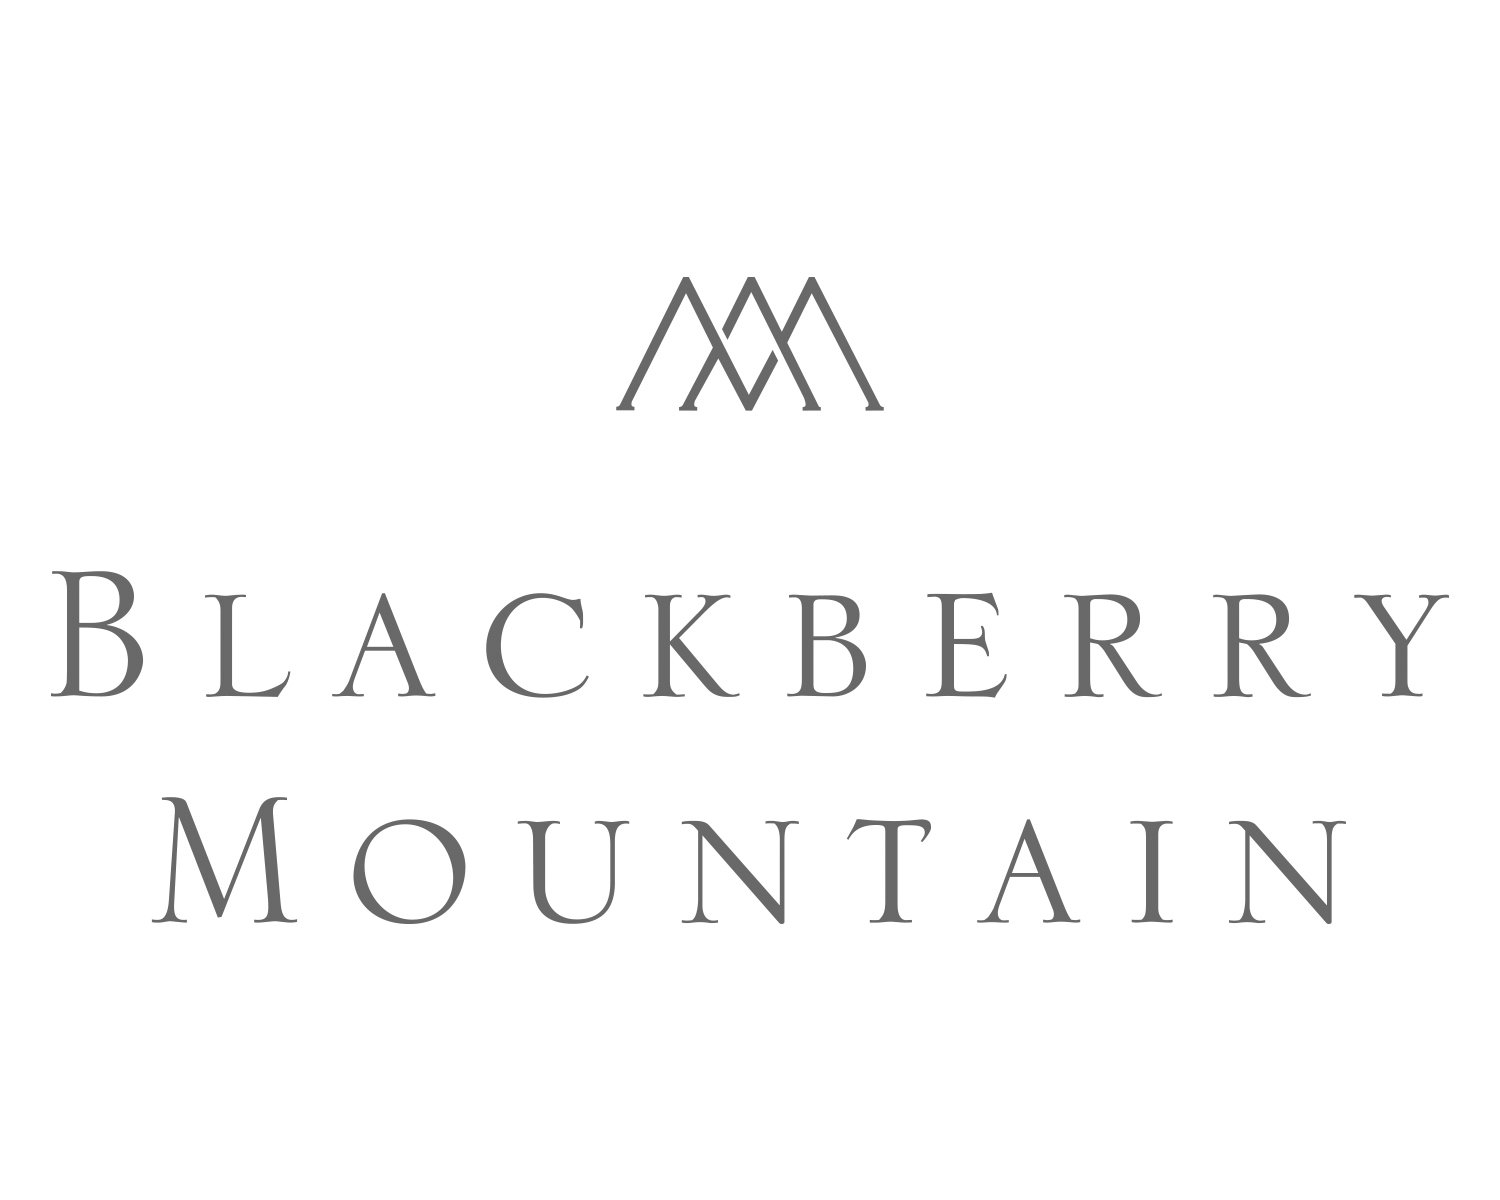  BLACKBERRY MOUNTAIN